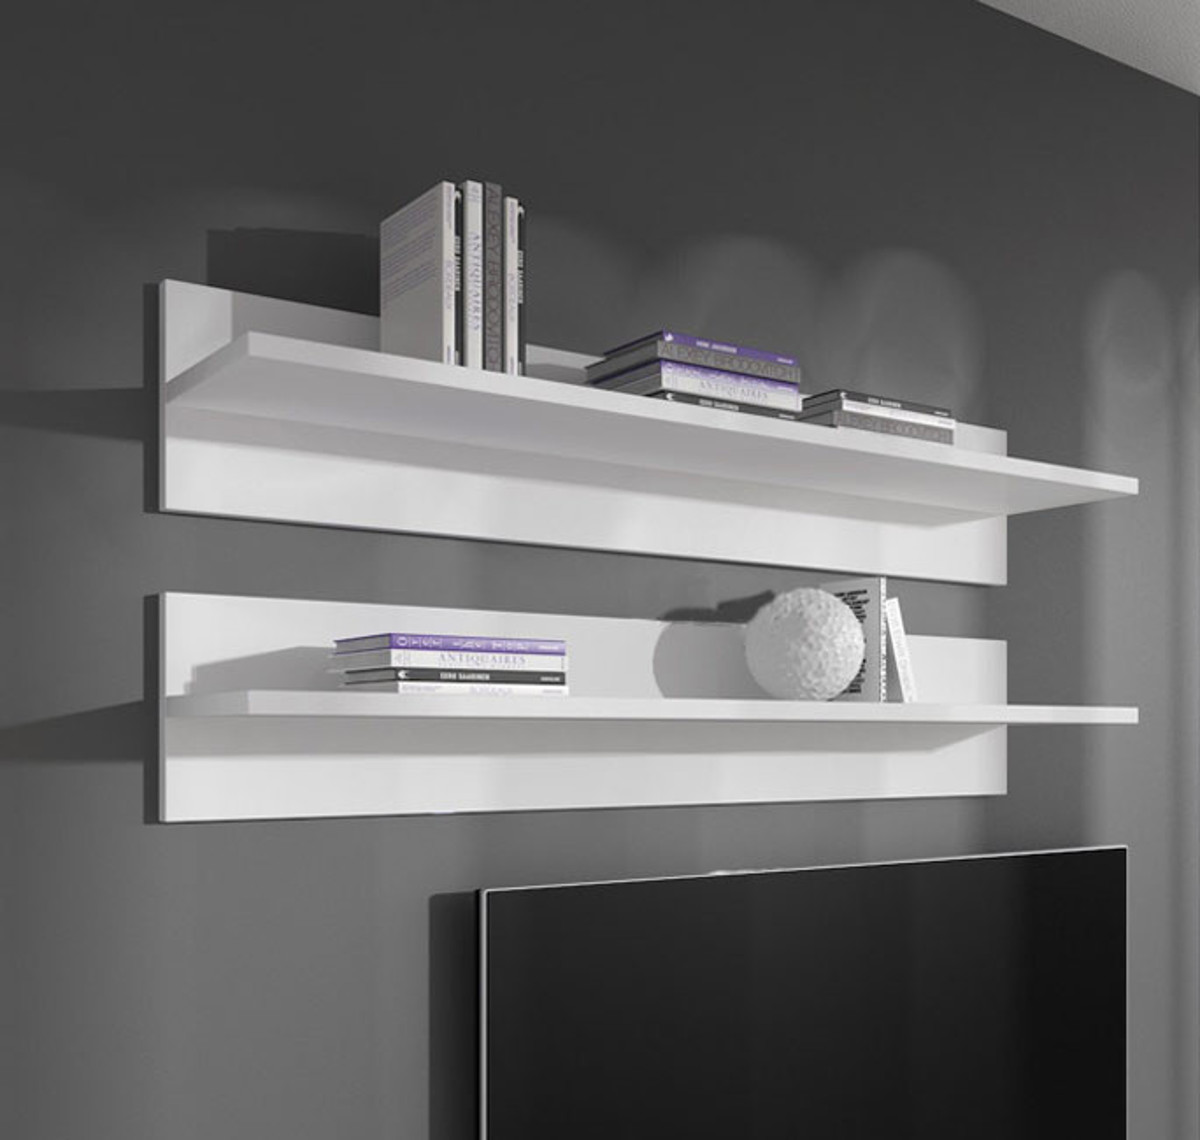 Imagen de Conjunto de dos estantes modelo Nerea en color blanco